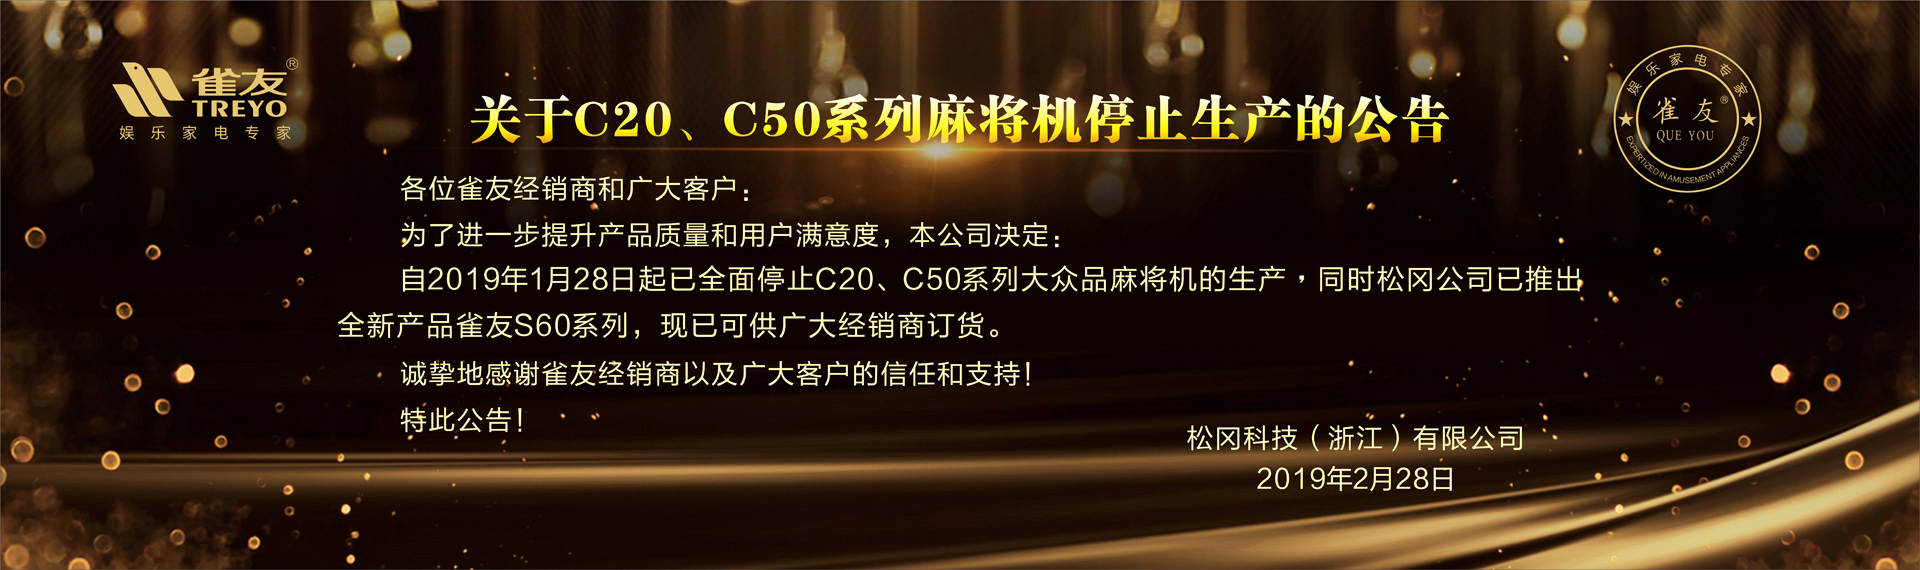 关于C20、C50系列麻将机停止生产的公告